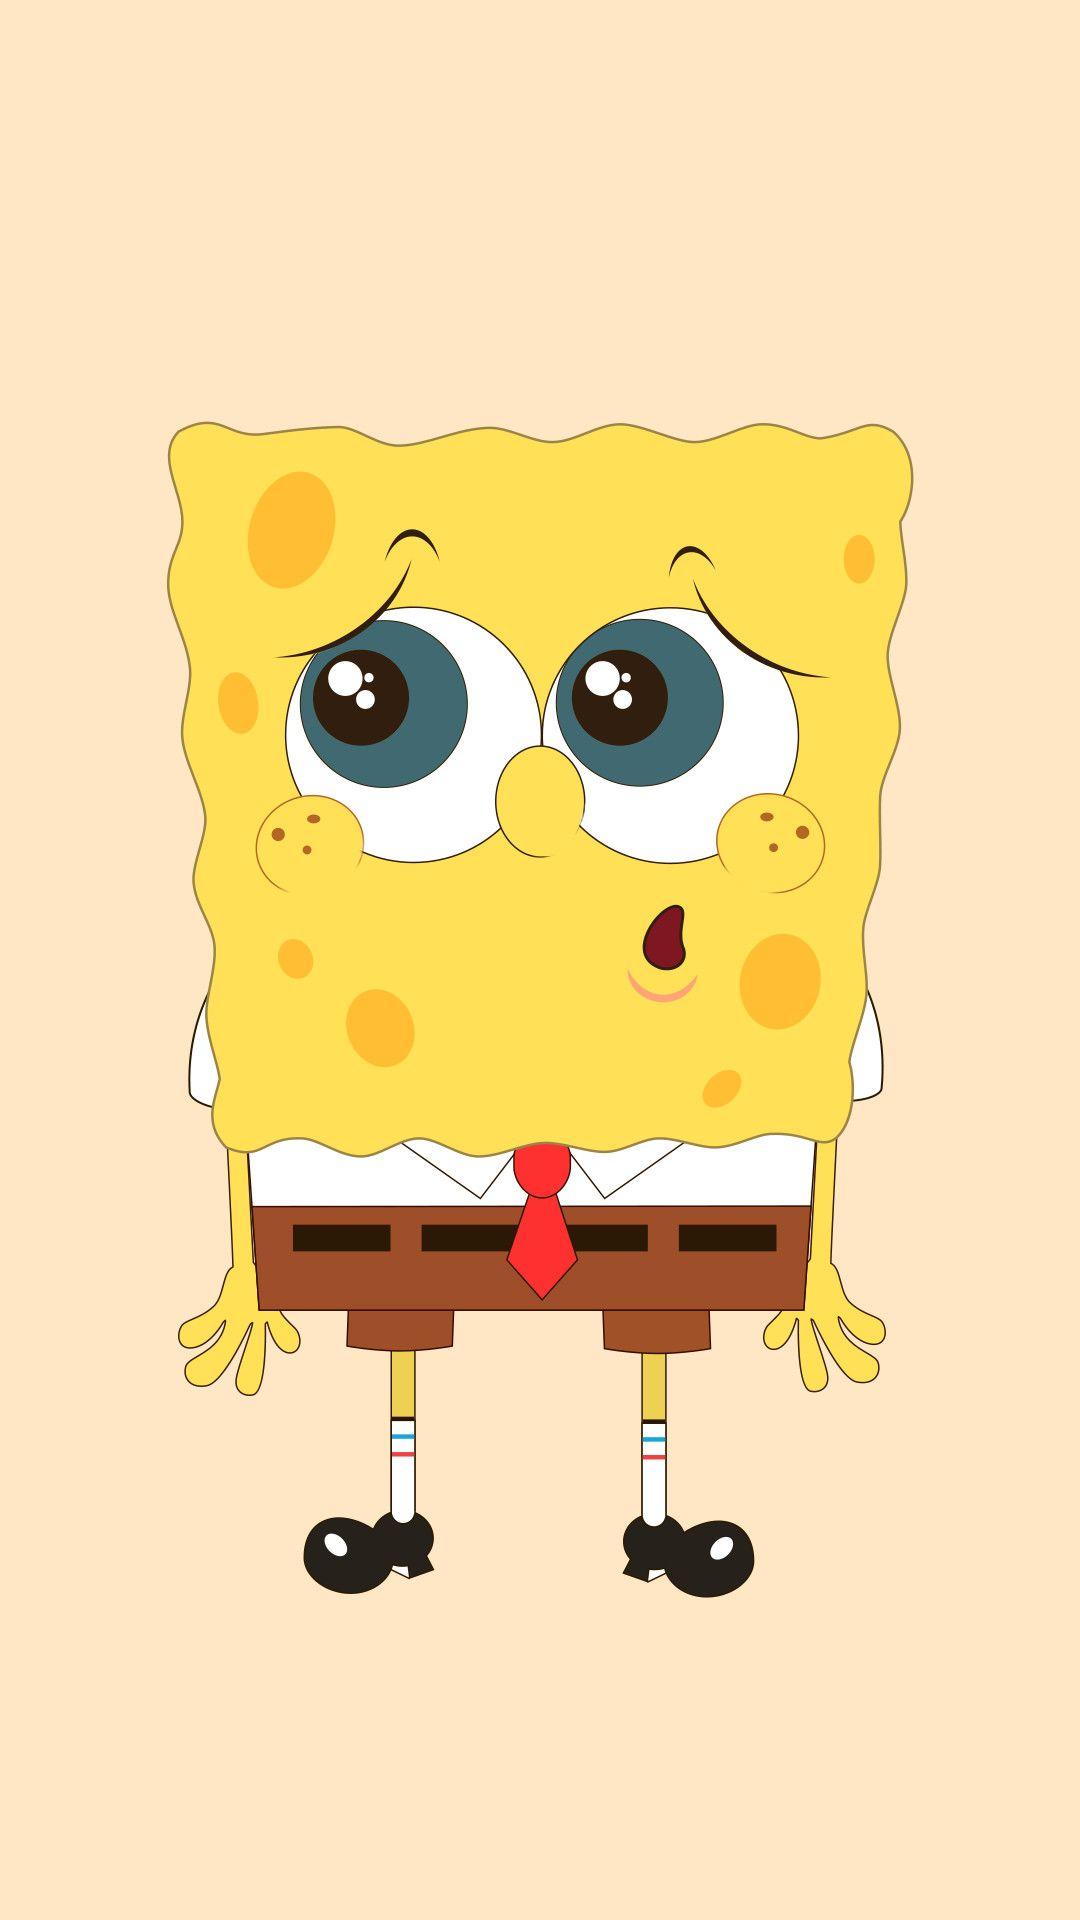 Cute Spongebob Wallpapers - Top Những Hình Ảnh Đẹp